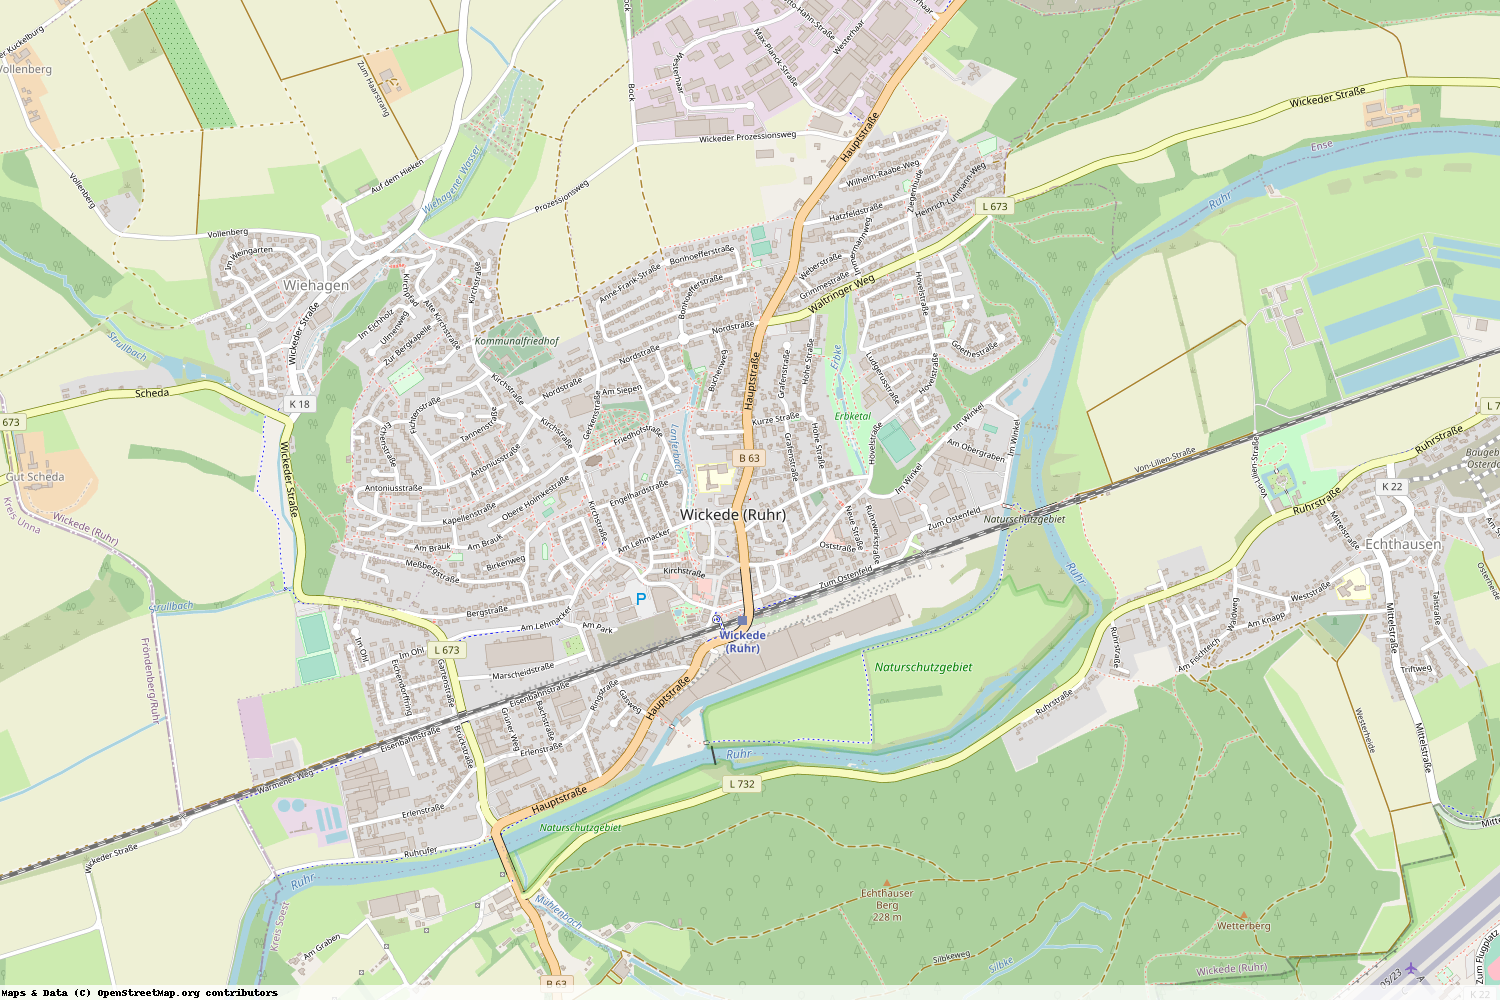 Ist gerade Stromausfall in Nordrhein-Westfalen - Soest - Wickede (Ruhr)?